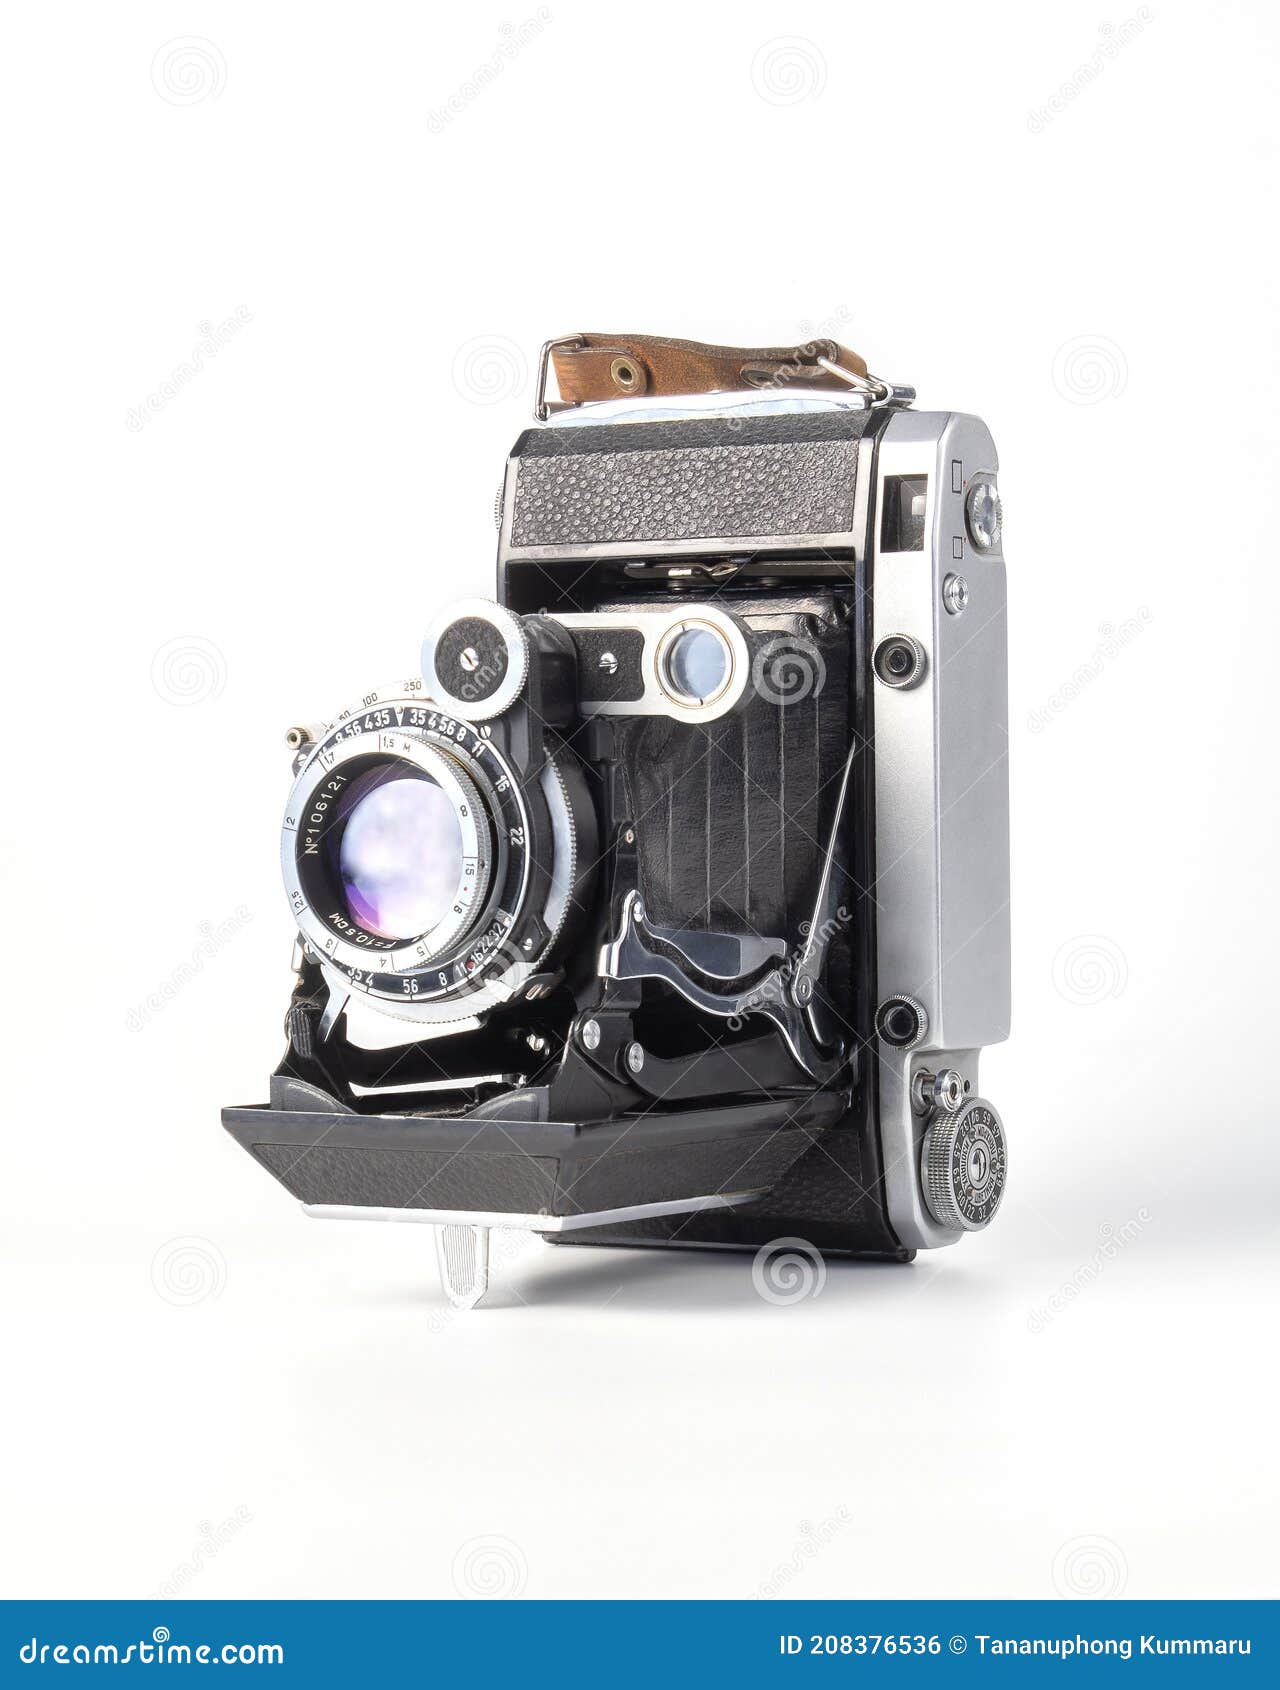 antique old fasion film camera